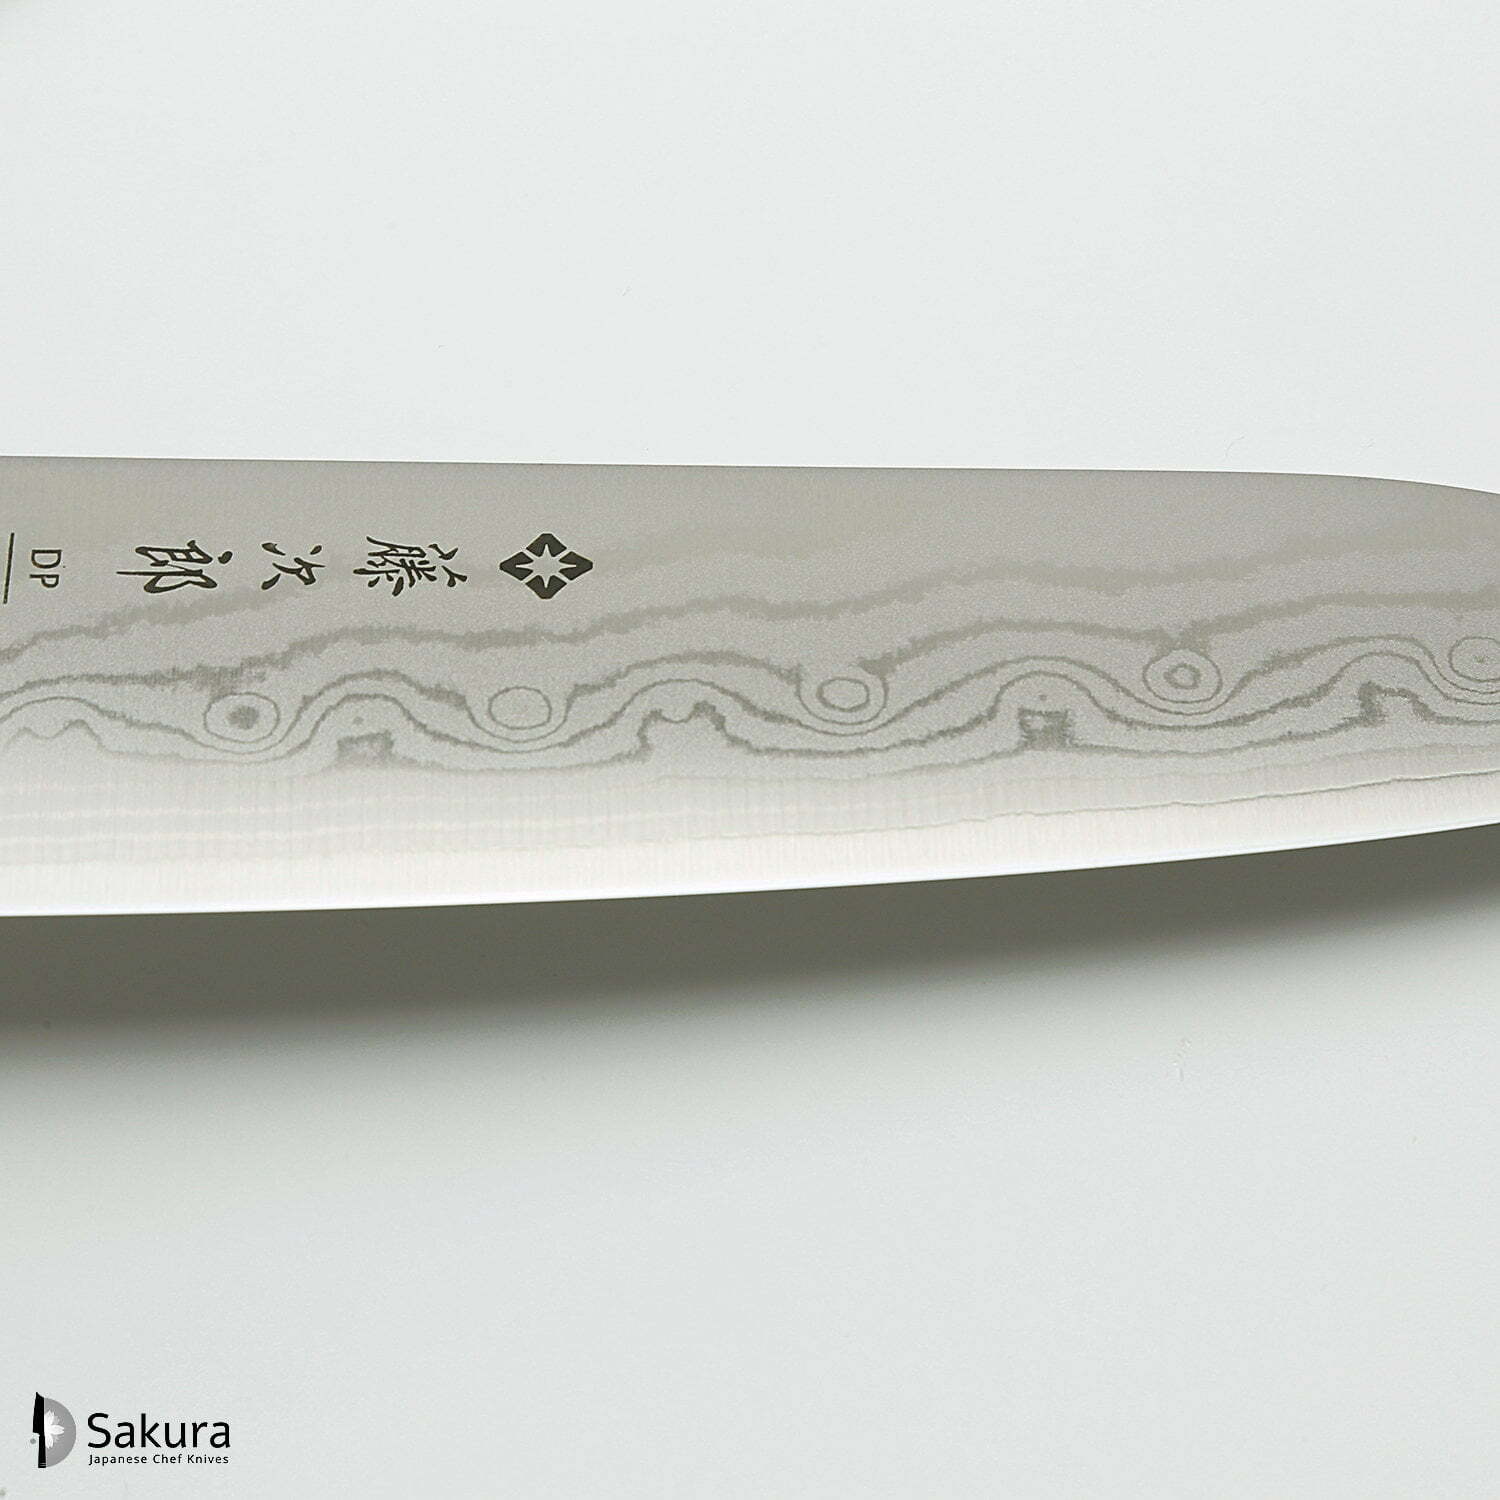 סכין רב-תכליתית סָנטוֹקוּ 170מ״מ מחוזקת 37 שכבות: פלדת פחמן יפנית VG-10 עטופה 36 שכבות פלדת אל-חלד גימור דמשק 37 שכבות טוג׳ירו יפן